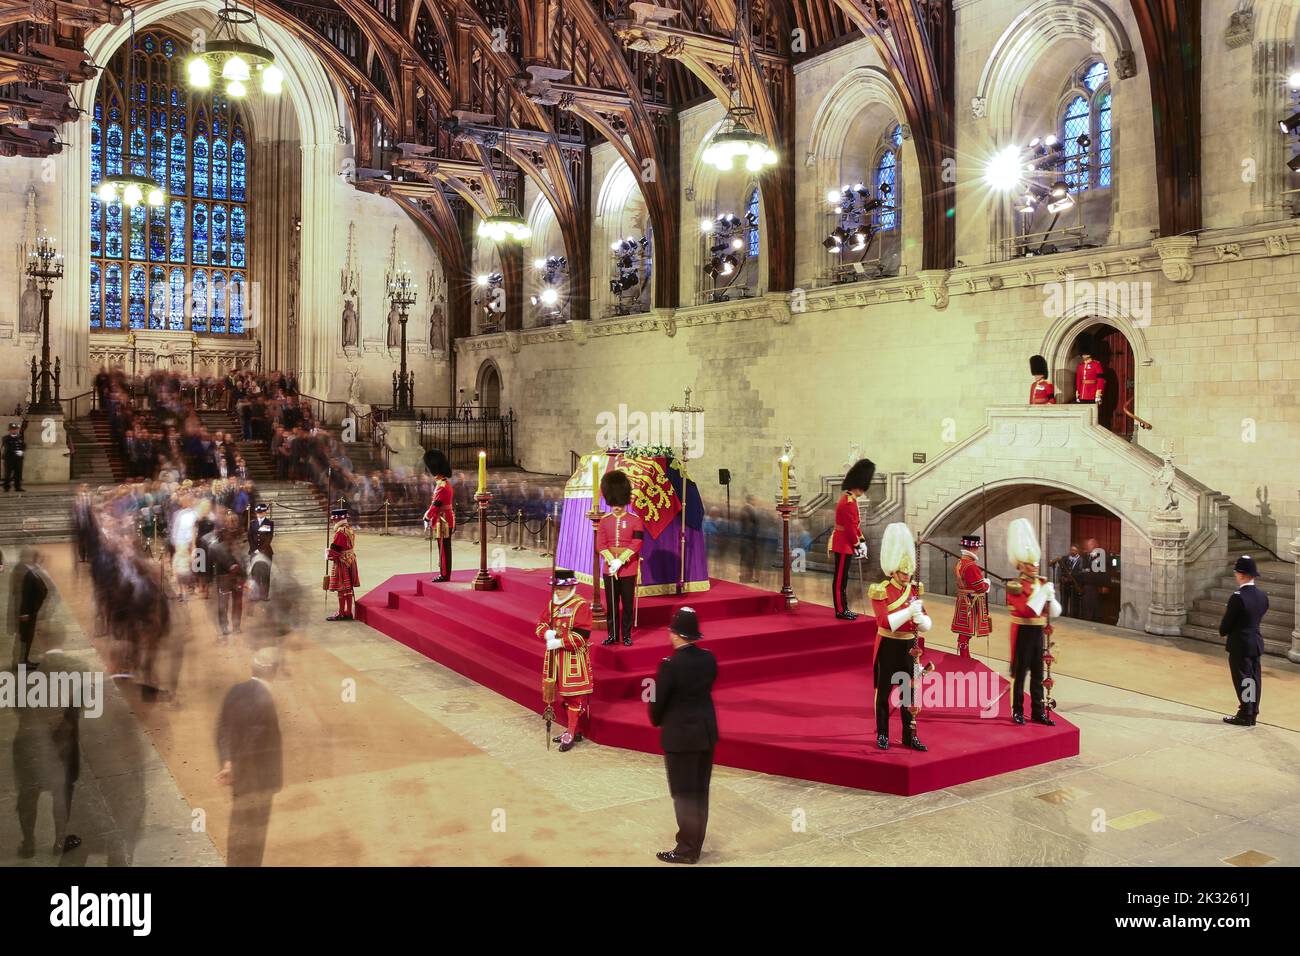 Les membres du public voient le cercueil de la reine Elizabeth II pendant la période d'état à Westminster Hall, Londres, Angleterre, Royaume-Uni Banque D'Images